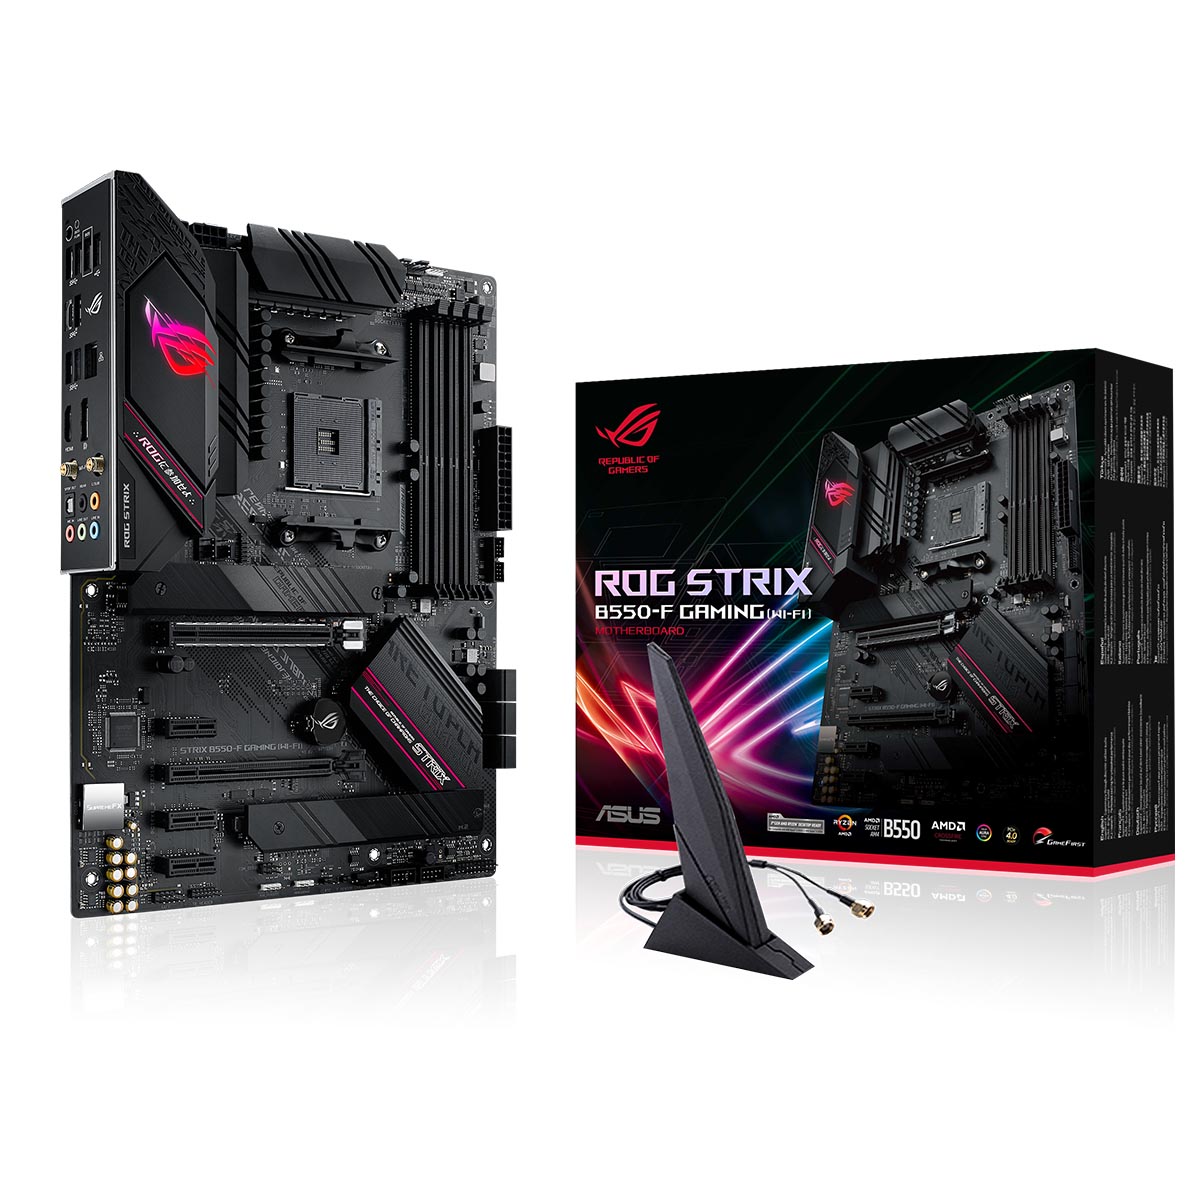 ASUS ROG STRIX B550-F AMD AM4 ATX गेमिंग WIFI मदरबोर्ड PCIe 4.0 और AI नेटवर्किंग के साथ